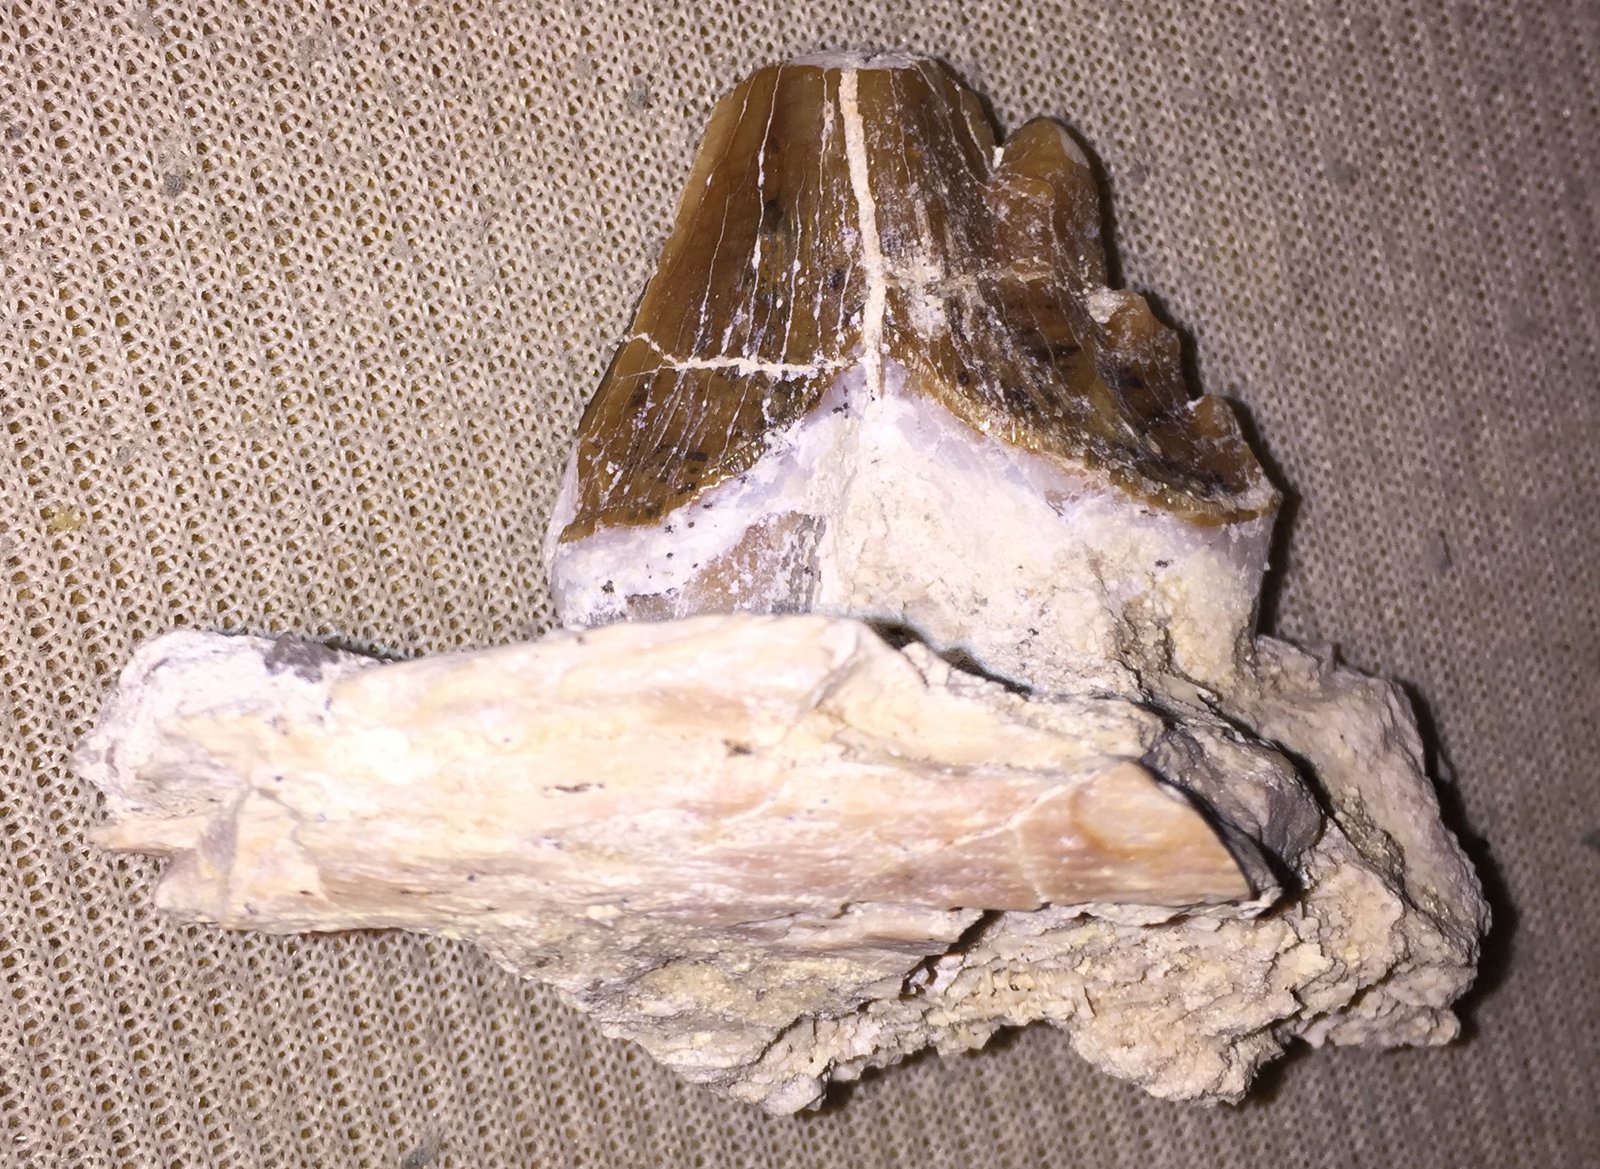 Basilosaurus molar still attached